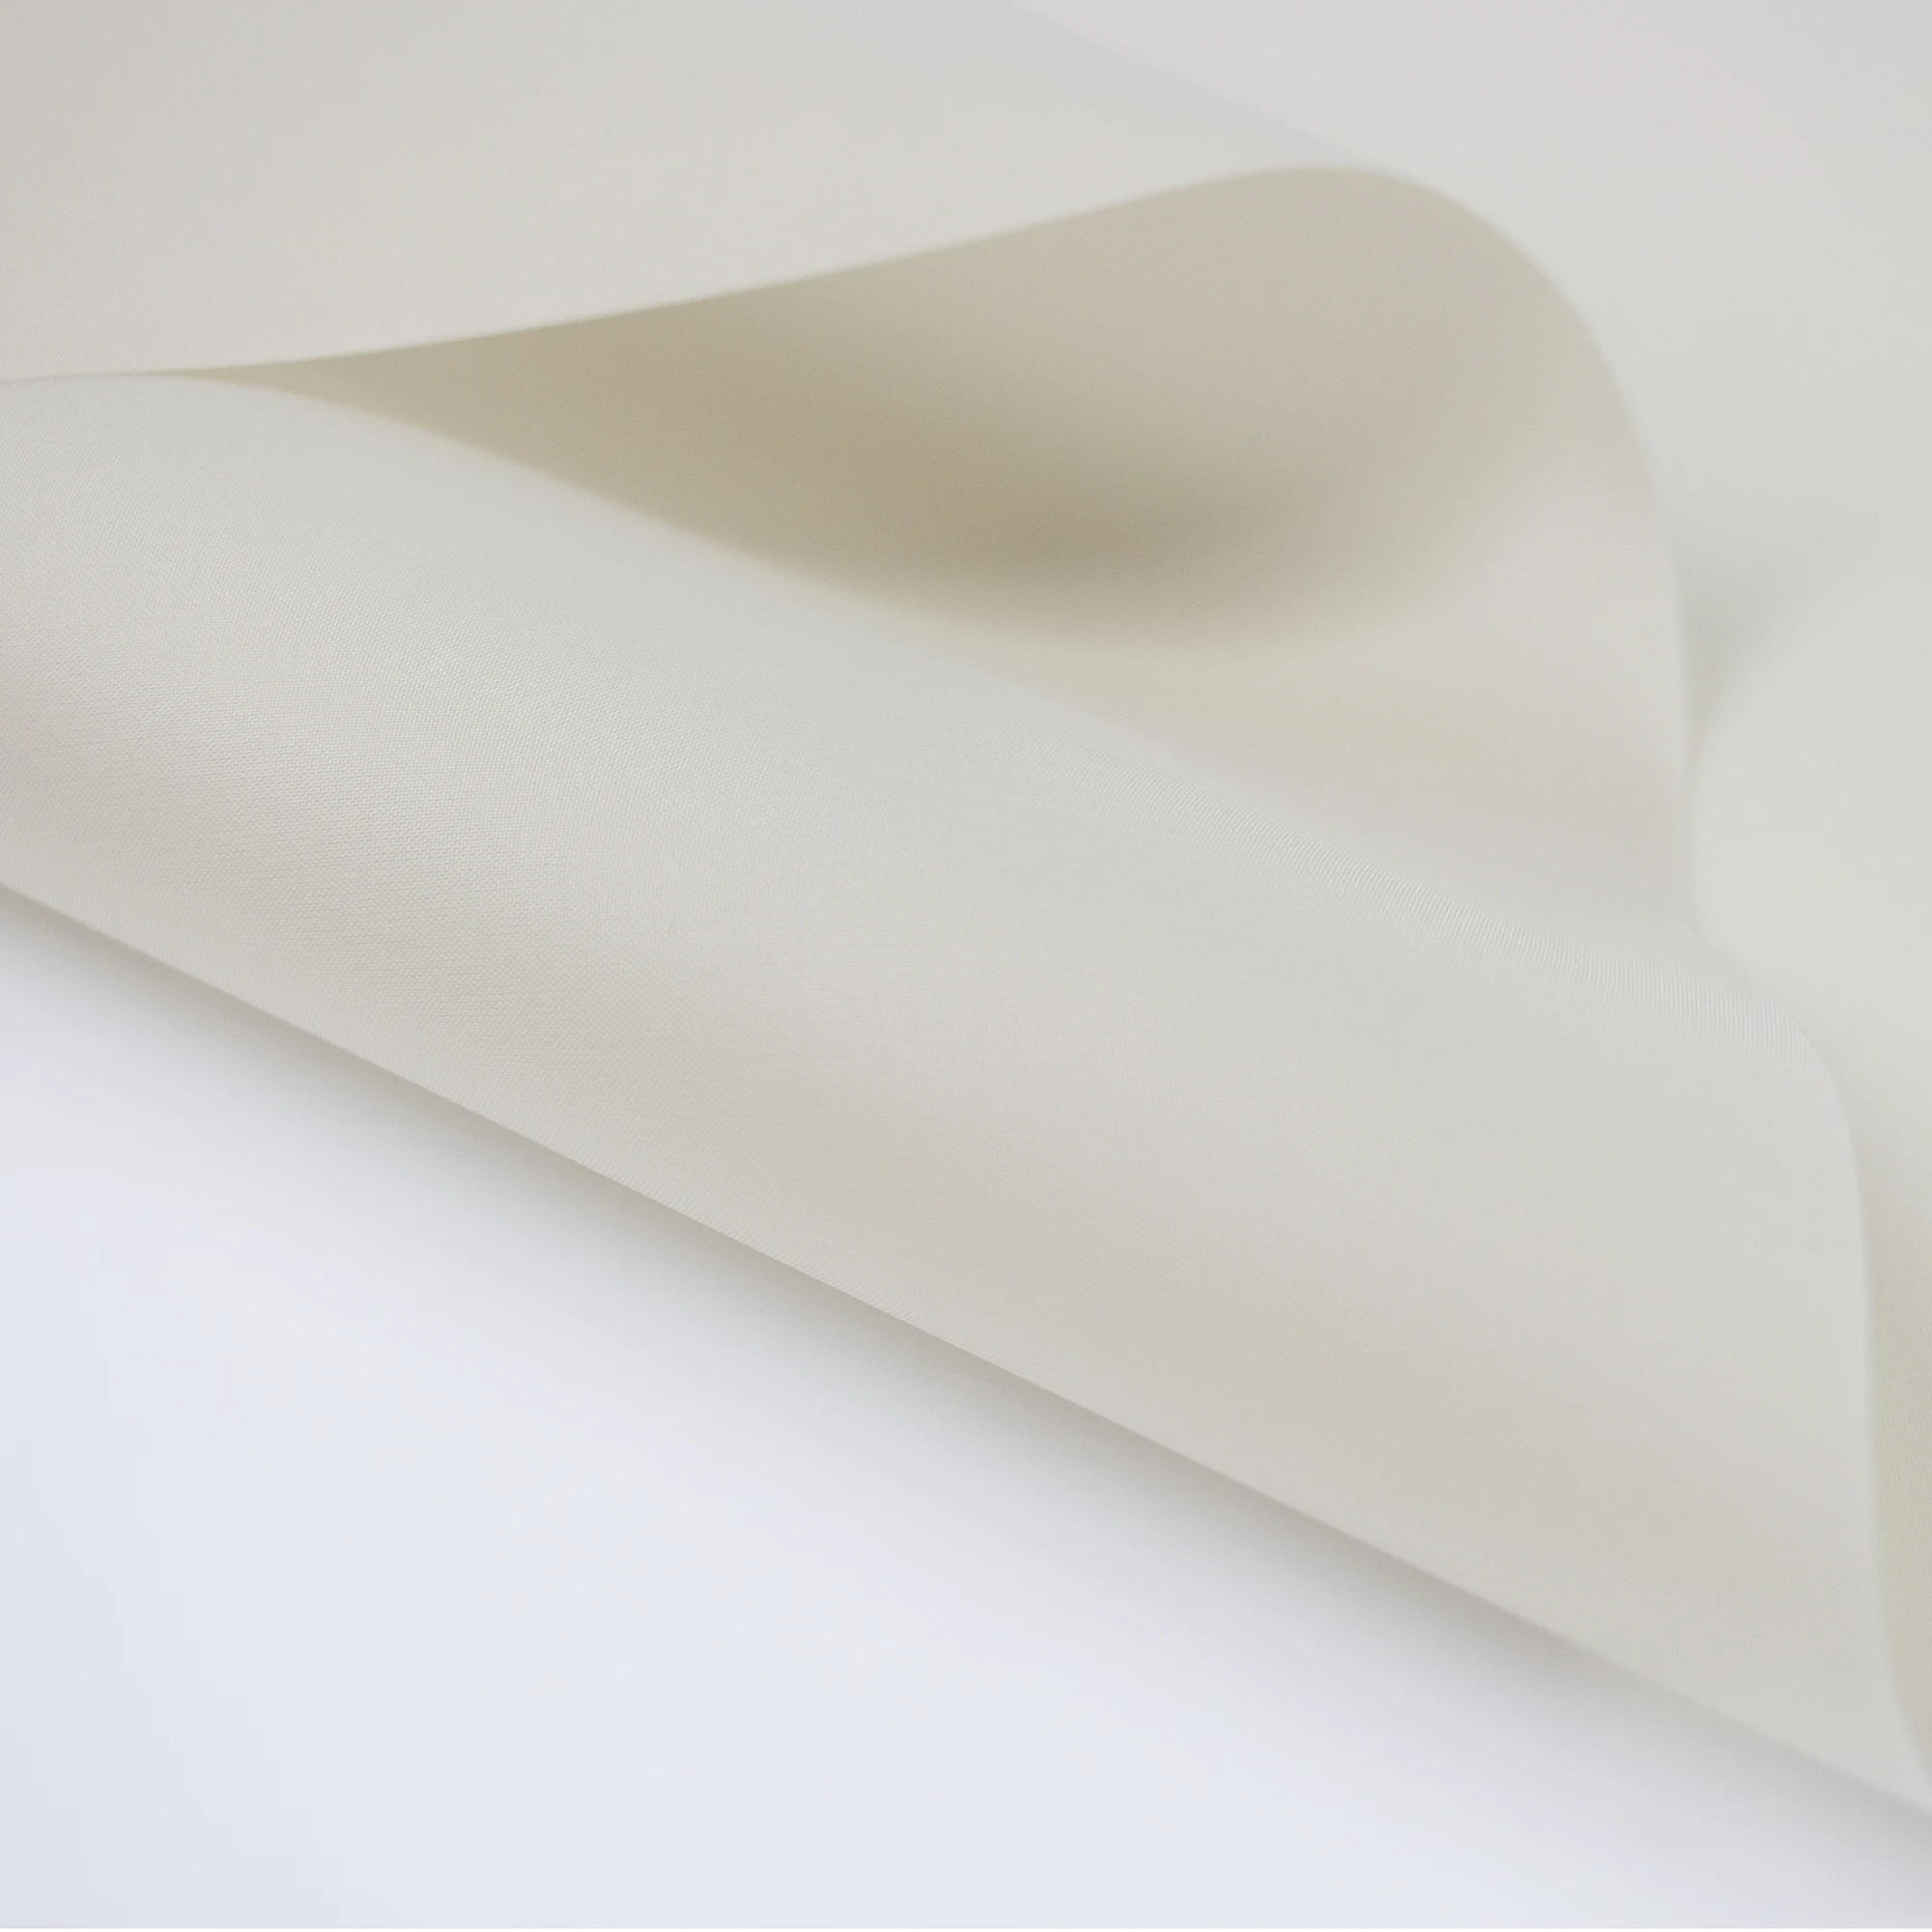 Надувной материал с нейлоновым покрытием из ТПУ для наружного использования, как манжета для измерения артериального давления/ткань с водонепроницаемым термополиуретановым покрытием для пляжной кровати